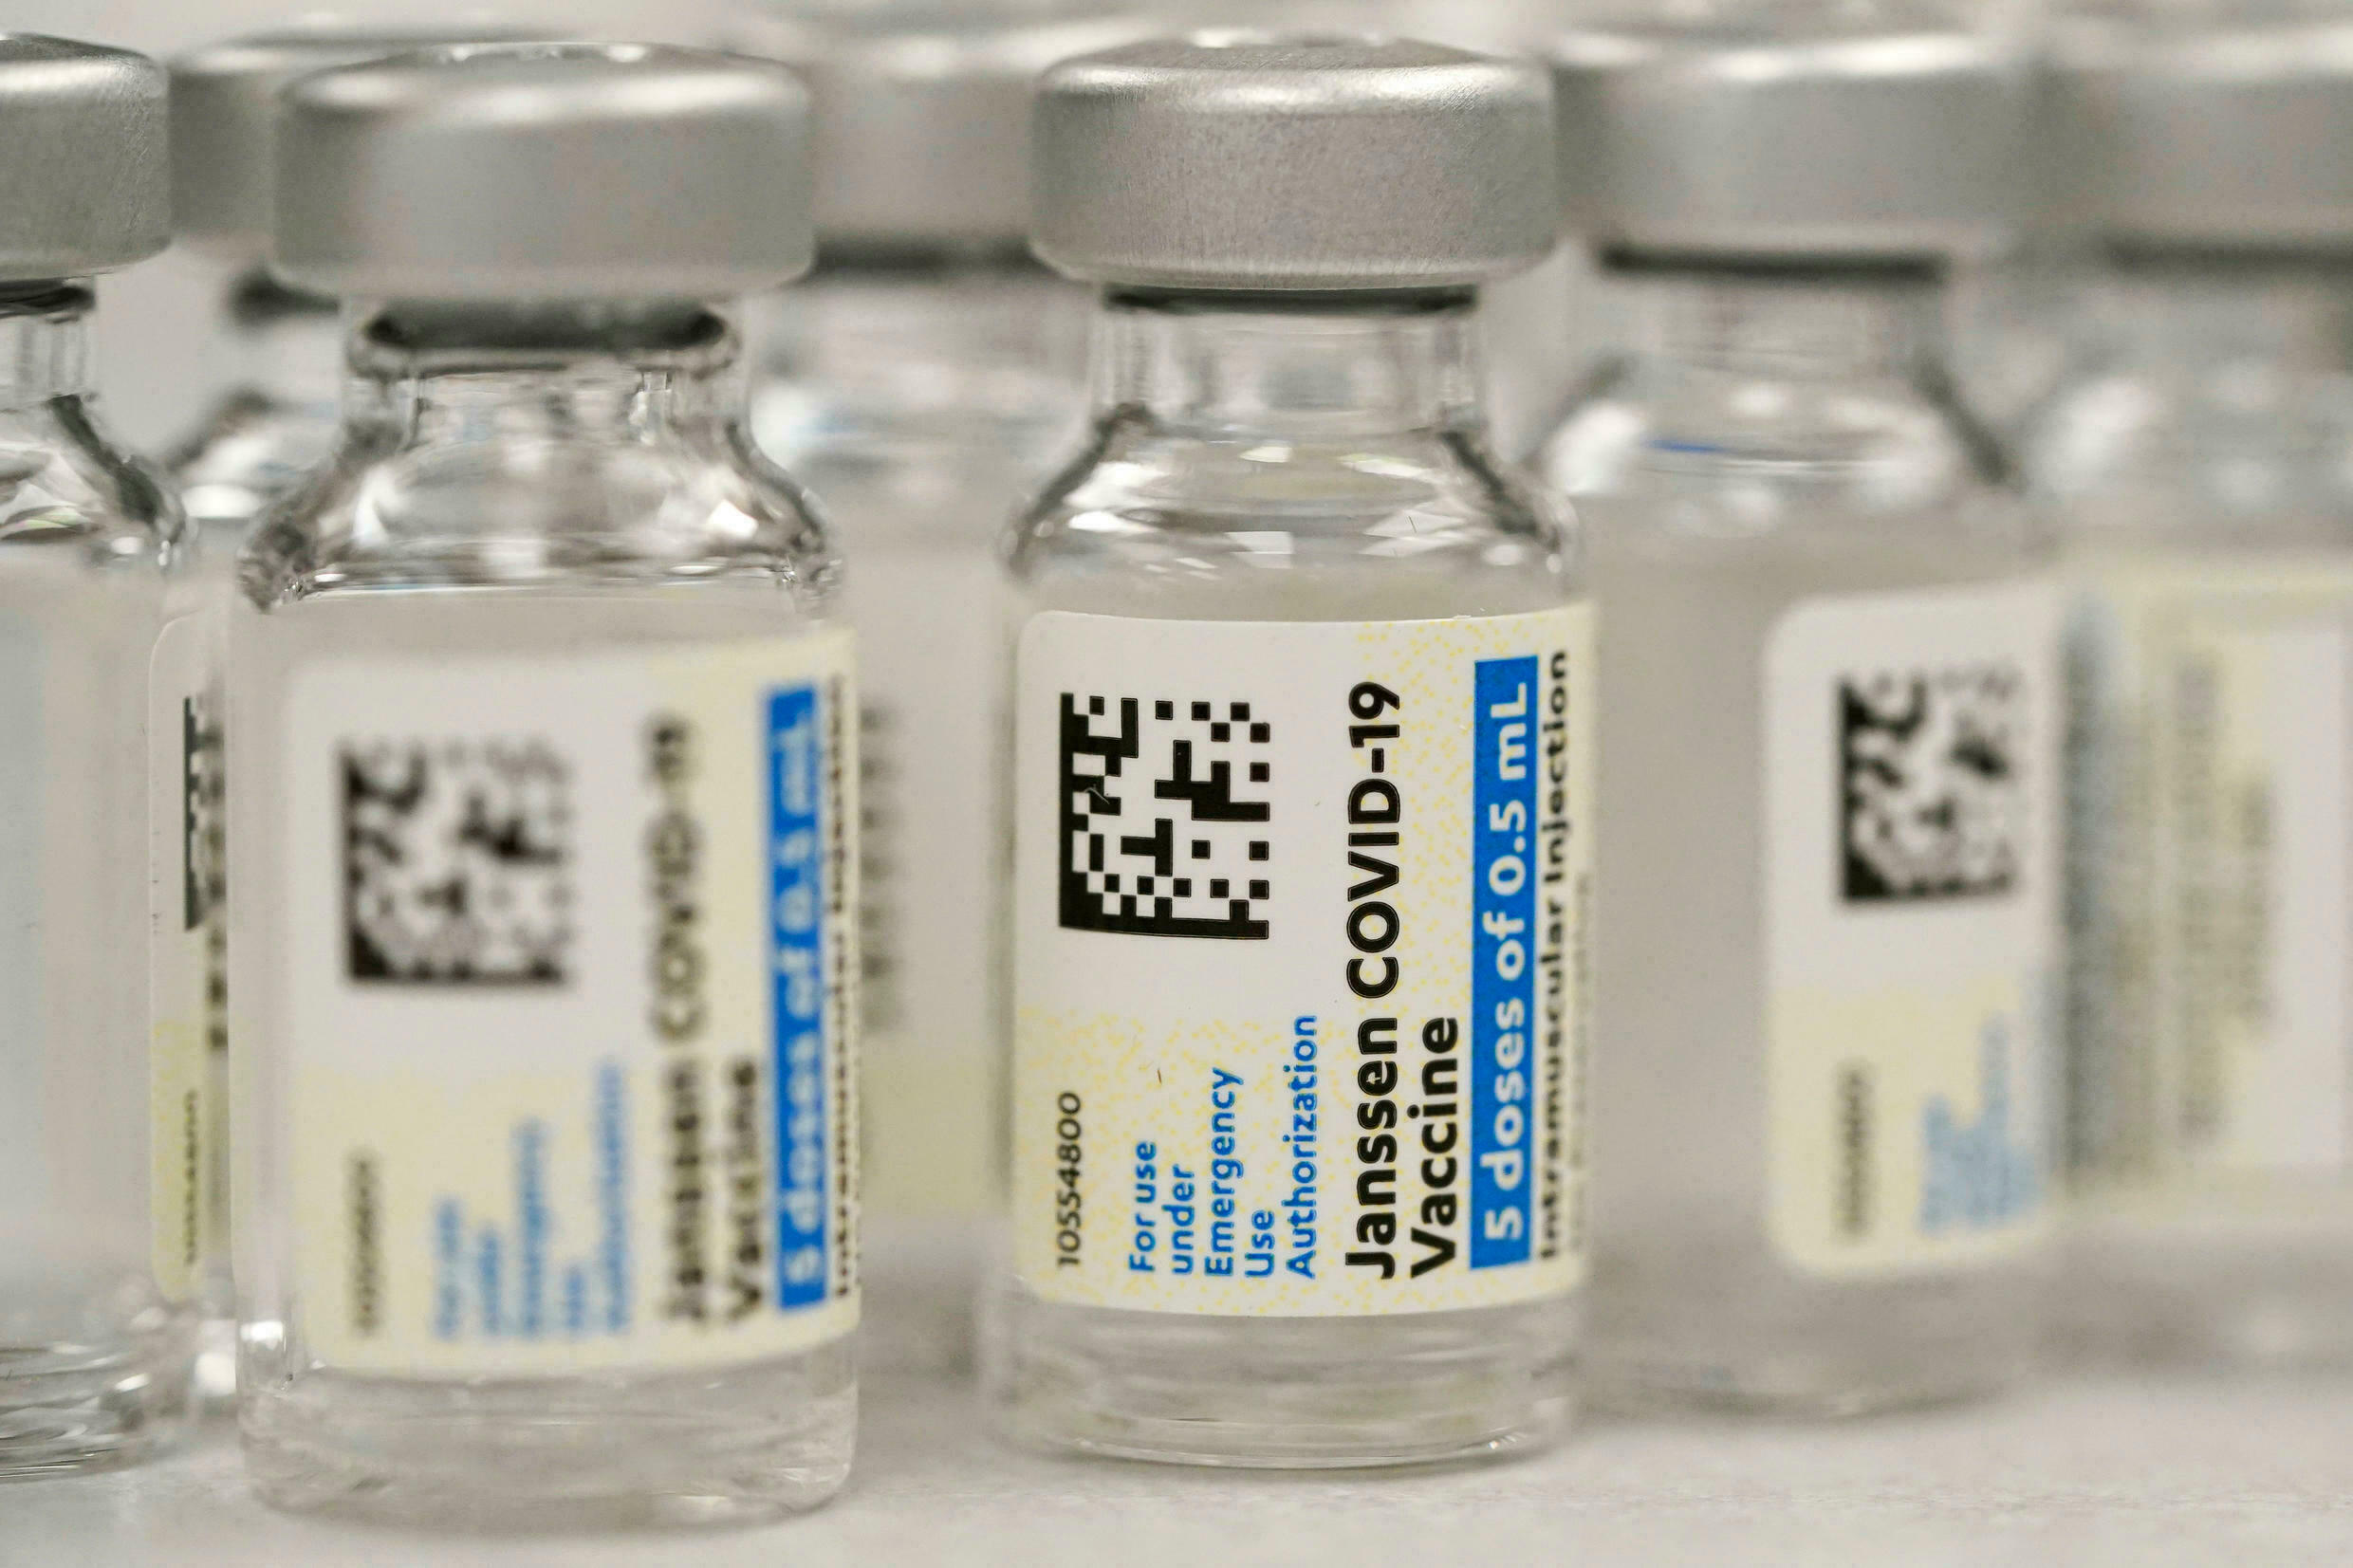 COVID-19 : La France doute de l’efficacité du vaccin Janssen